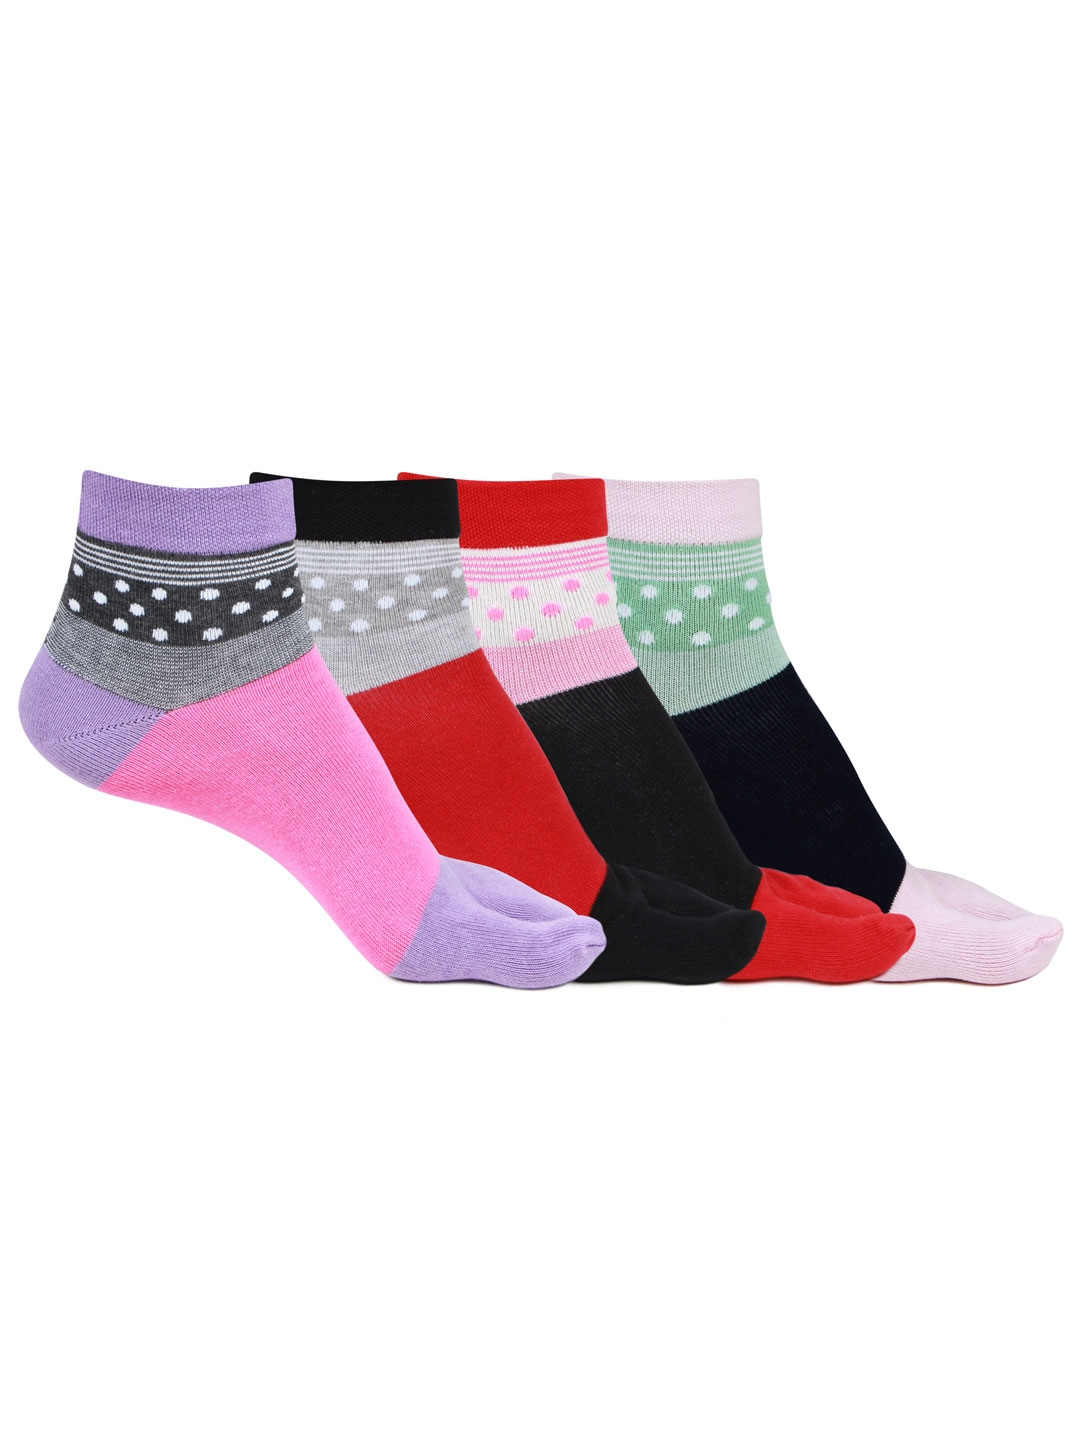 Buy Bonjour Women Pack Of 4 Assorted Ankle Length Patterned Thumb Socks ...